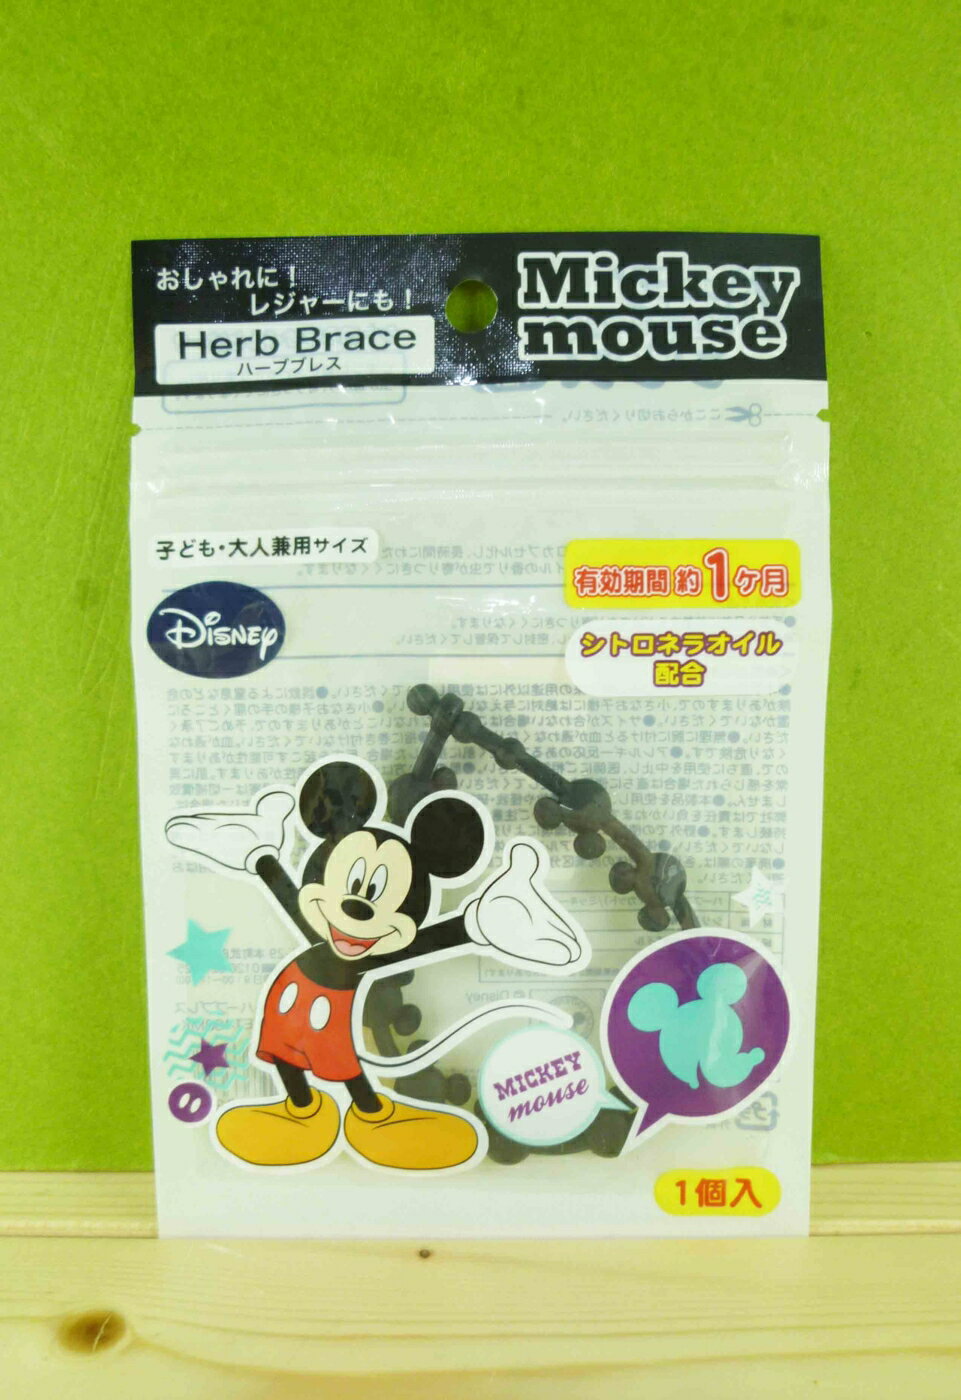 【震撼精品百貨】Micky Mouse 米奇/米妮 防蚊手環-黑米奇 震撼日式精品百貨